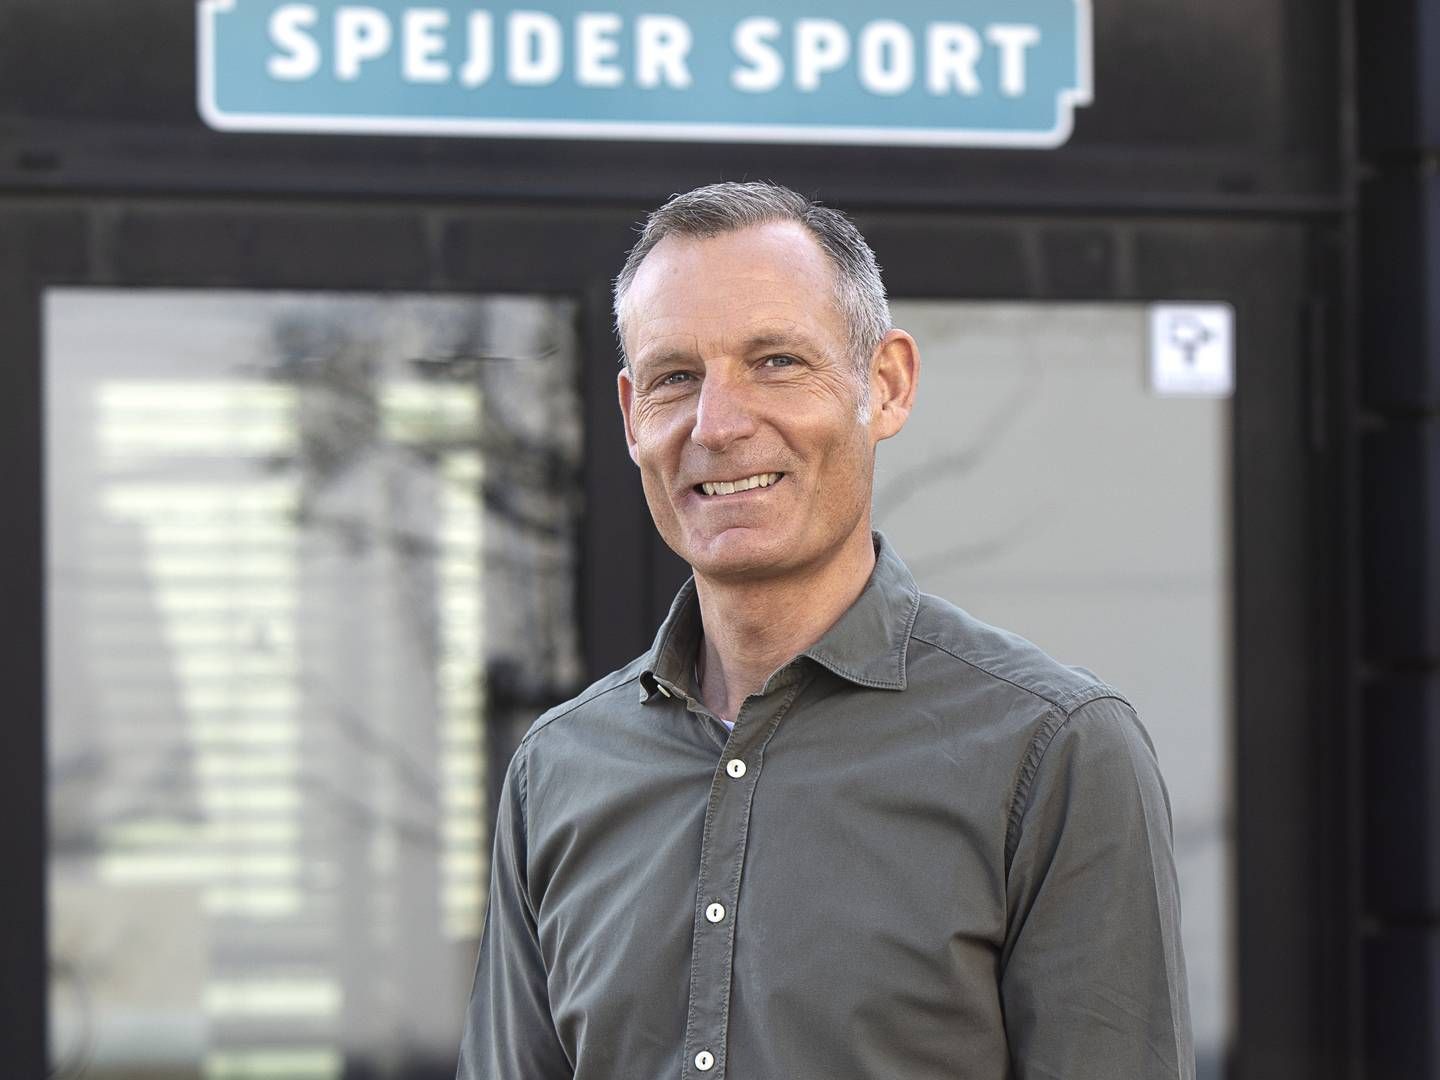 Thomas Vangsgaard er efter en længere karriere i Ecco rykket til outdoorkæden Spejder Sport, hvor han 1. april afløste John Lange som adm. direktør. | Foto: Spejder Sport